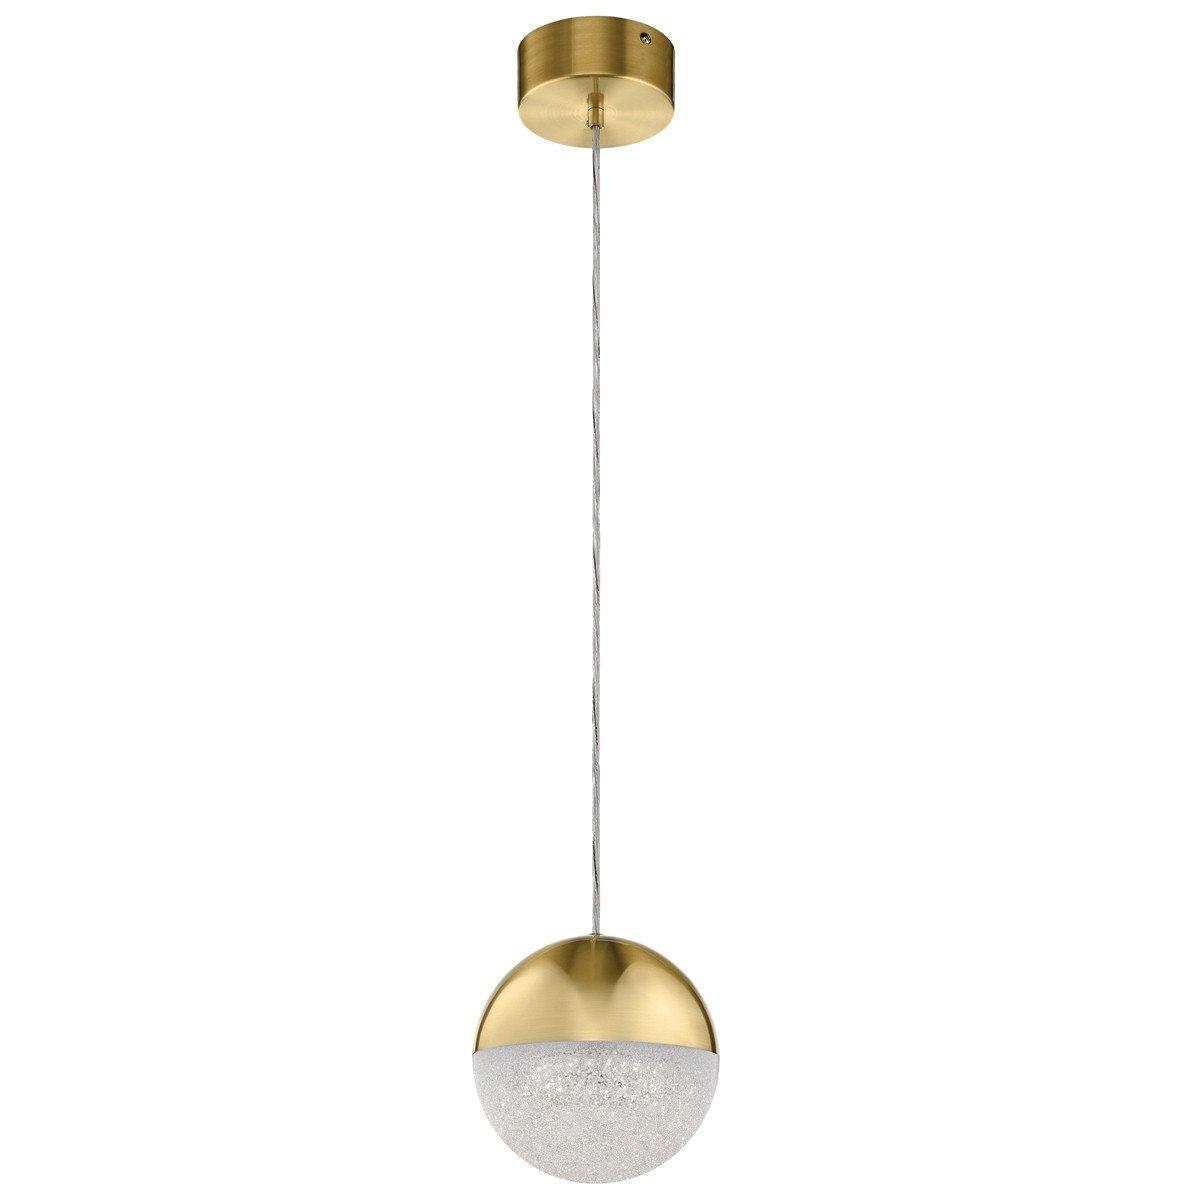 Kichler Moonlit Integrated LED Spherical Pendant Ceiling Light Champagne Gold 3000K